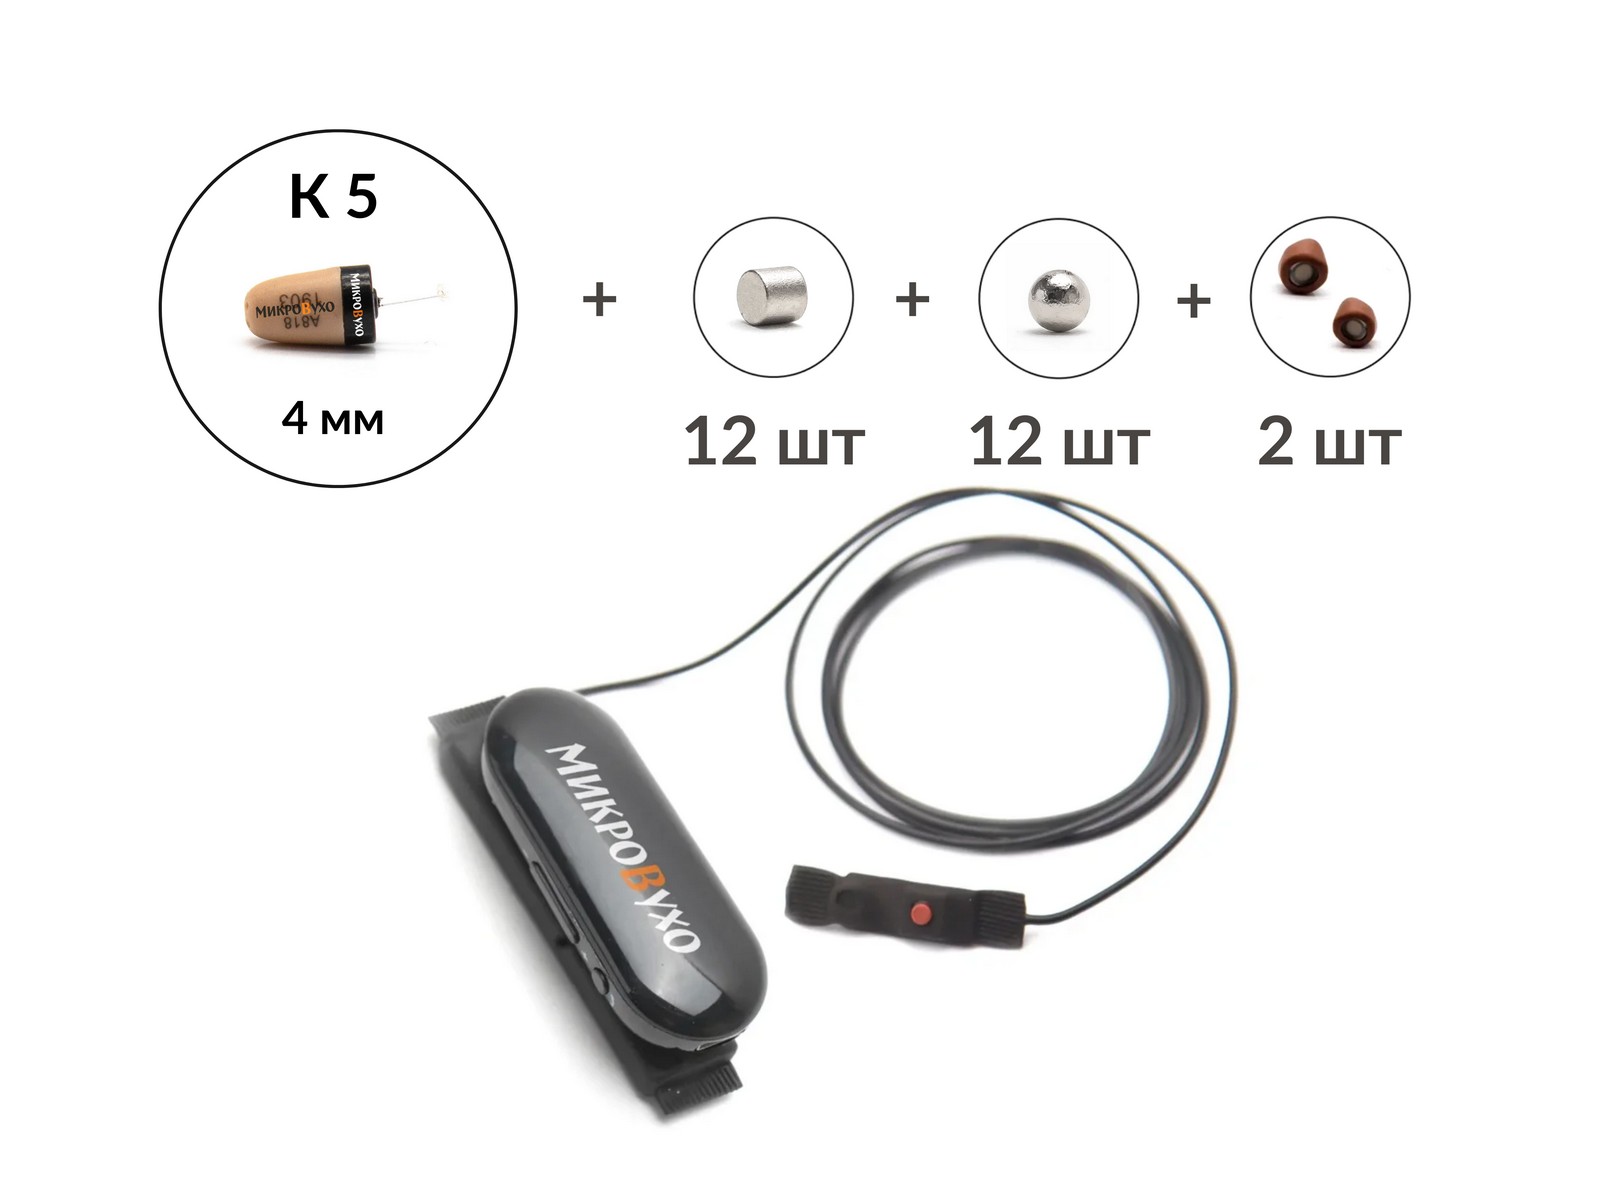 Bluetooth Box Pro Plus c кнопкой-пищалкой, капсулой К5 4 мм и 26 магнитами - изображение 12